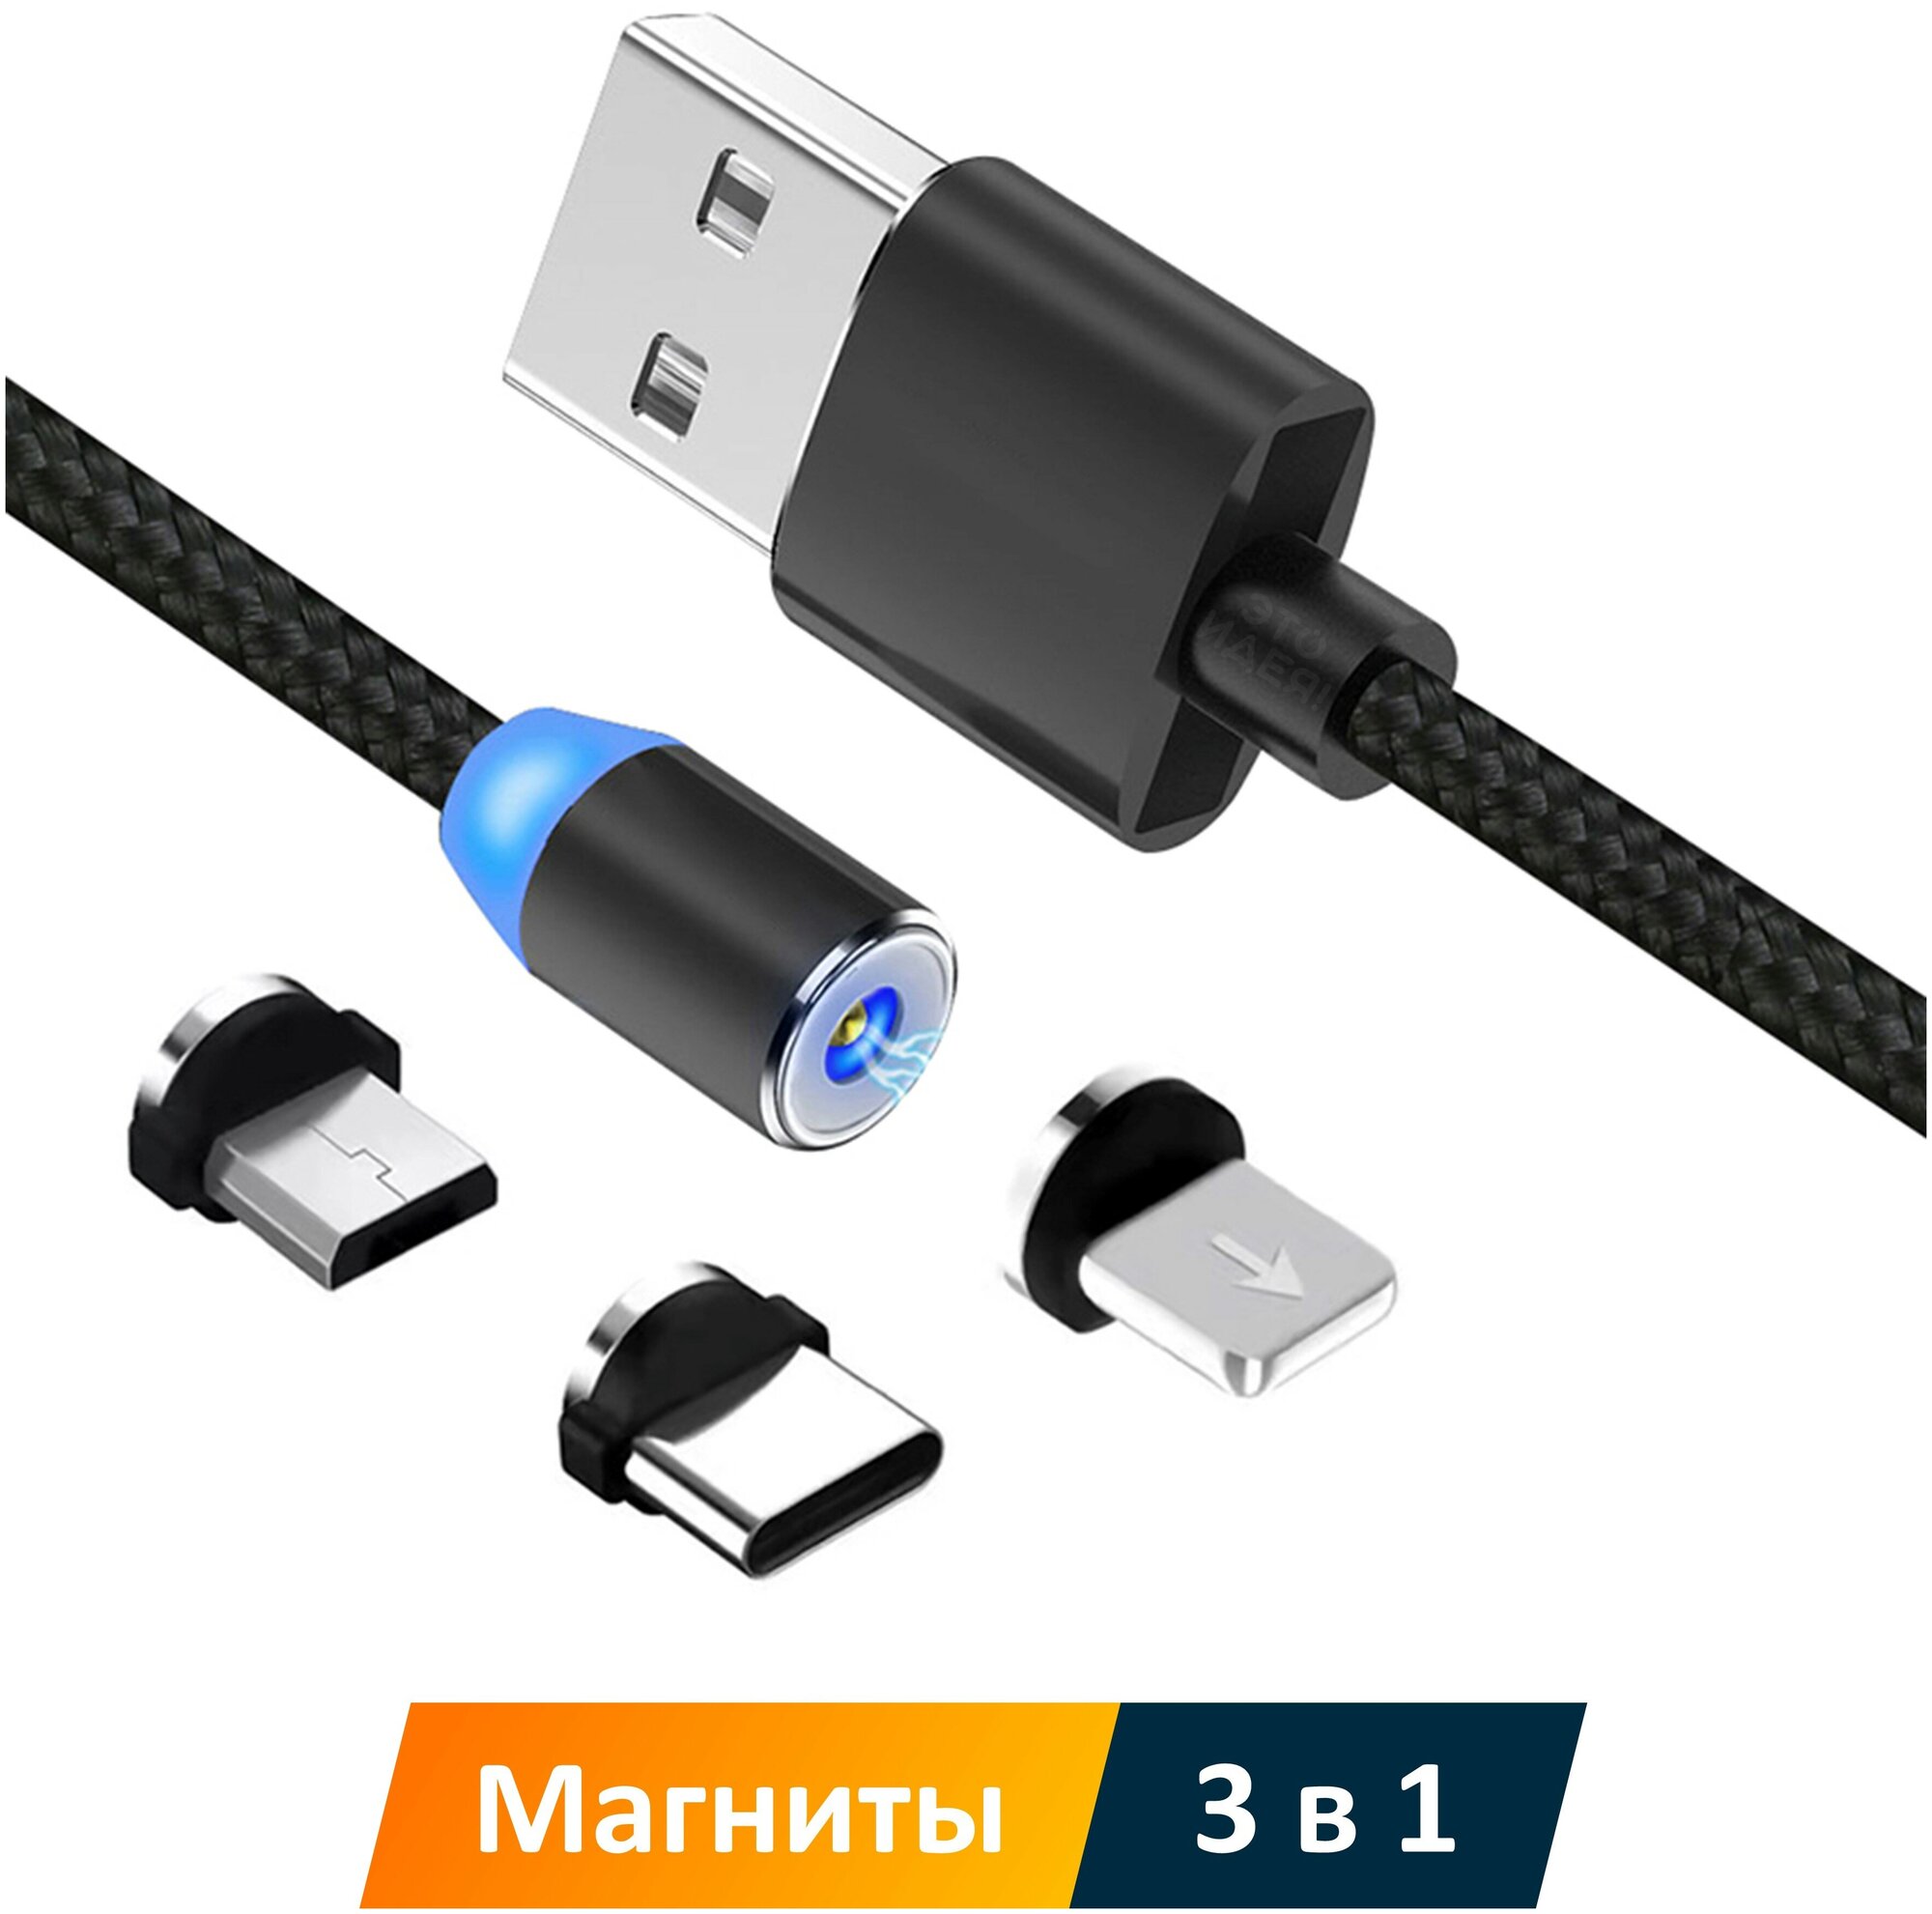 Магнитный кабель 3 в 1: Lightning, Type-C, micro USB, 2.4А, 1 метр / три зарядных коннектора с магнитами для iPhone, Android и других устройств